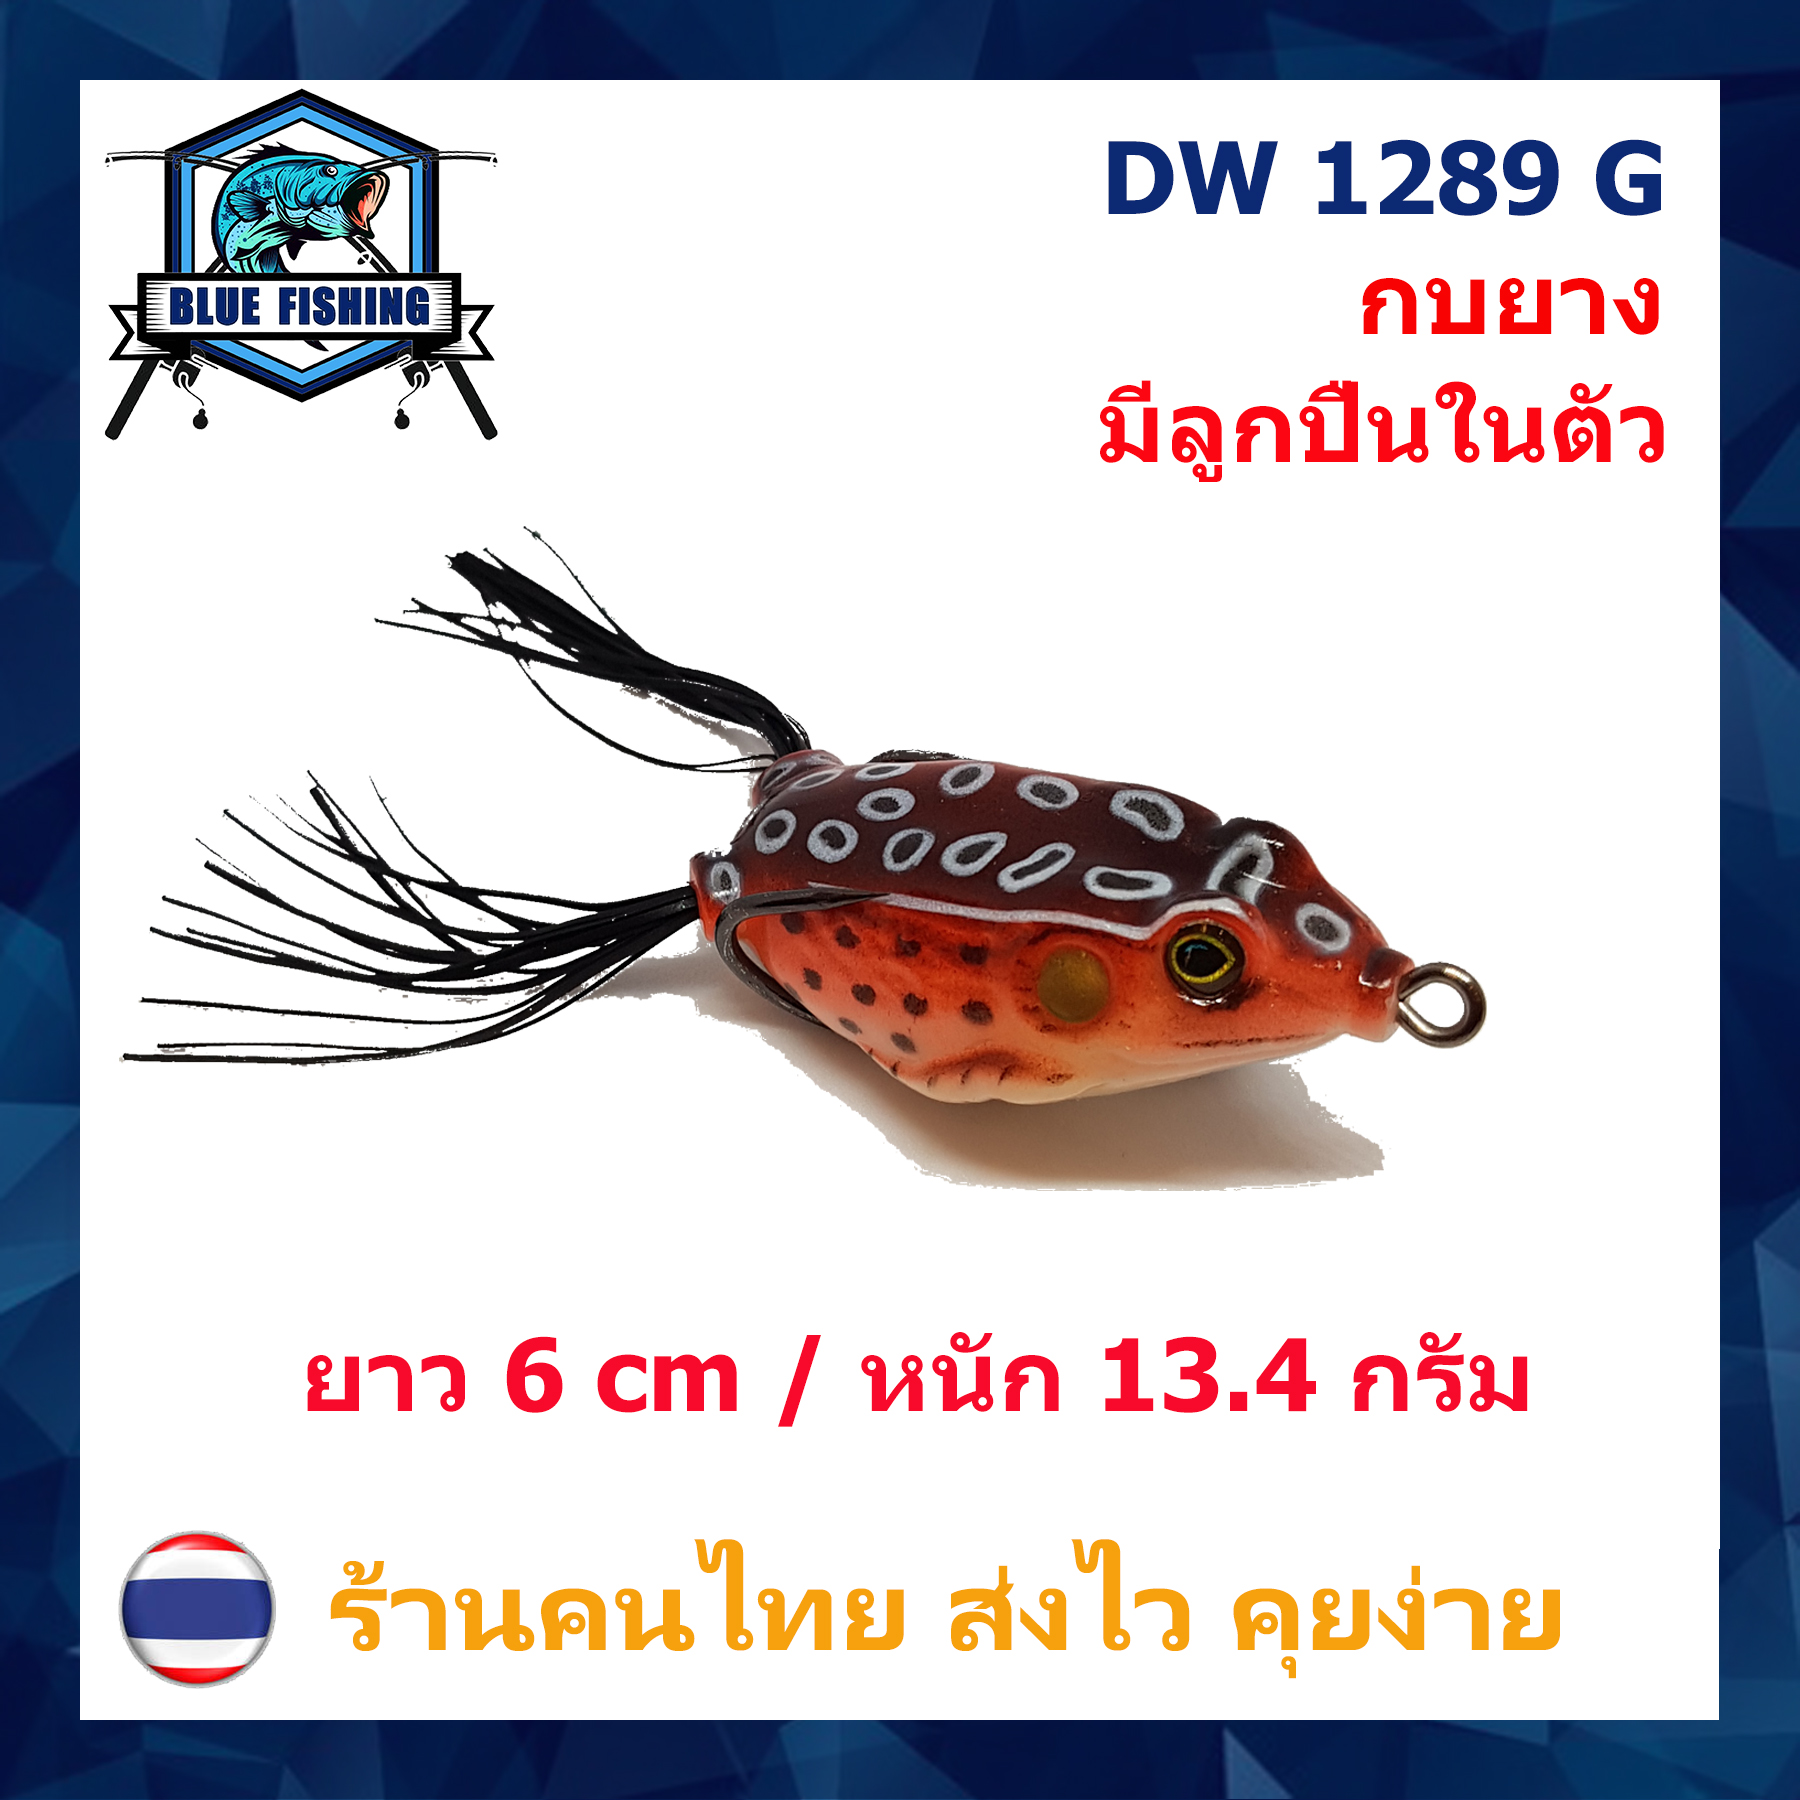 บลู ฟิชชิ่ง [ Blue Fishing ] ( ส่งเร็ว มีสินค้าพร้อมส่ง ) เหยื่อปลอม เหยื่อตกปลา กบยาง กันสวะ มีลูกปืนข้างใน ยาว 6 CM หนัก 13.4 กรัม DW 1289